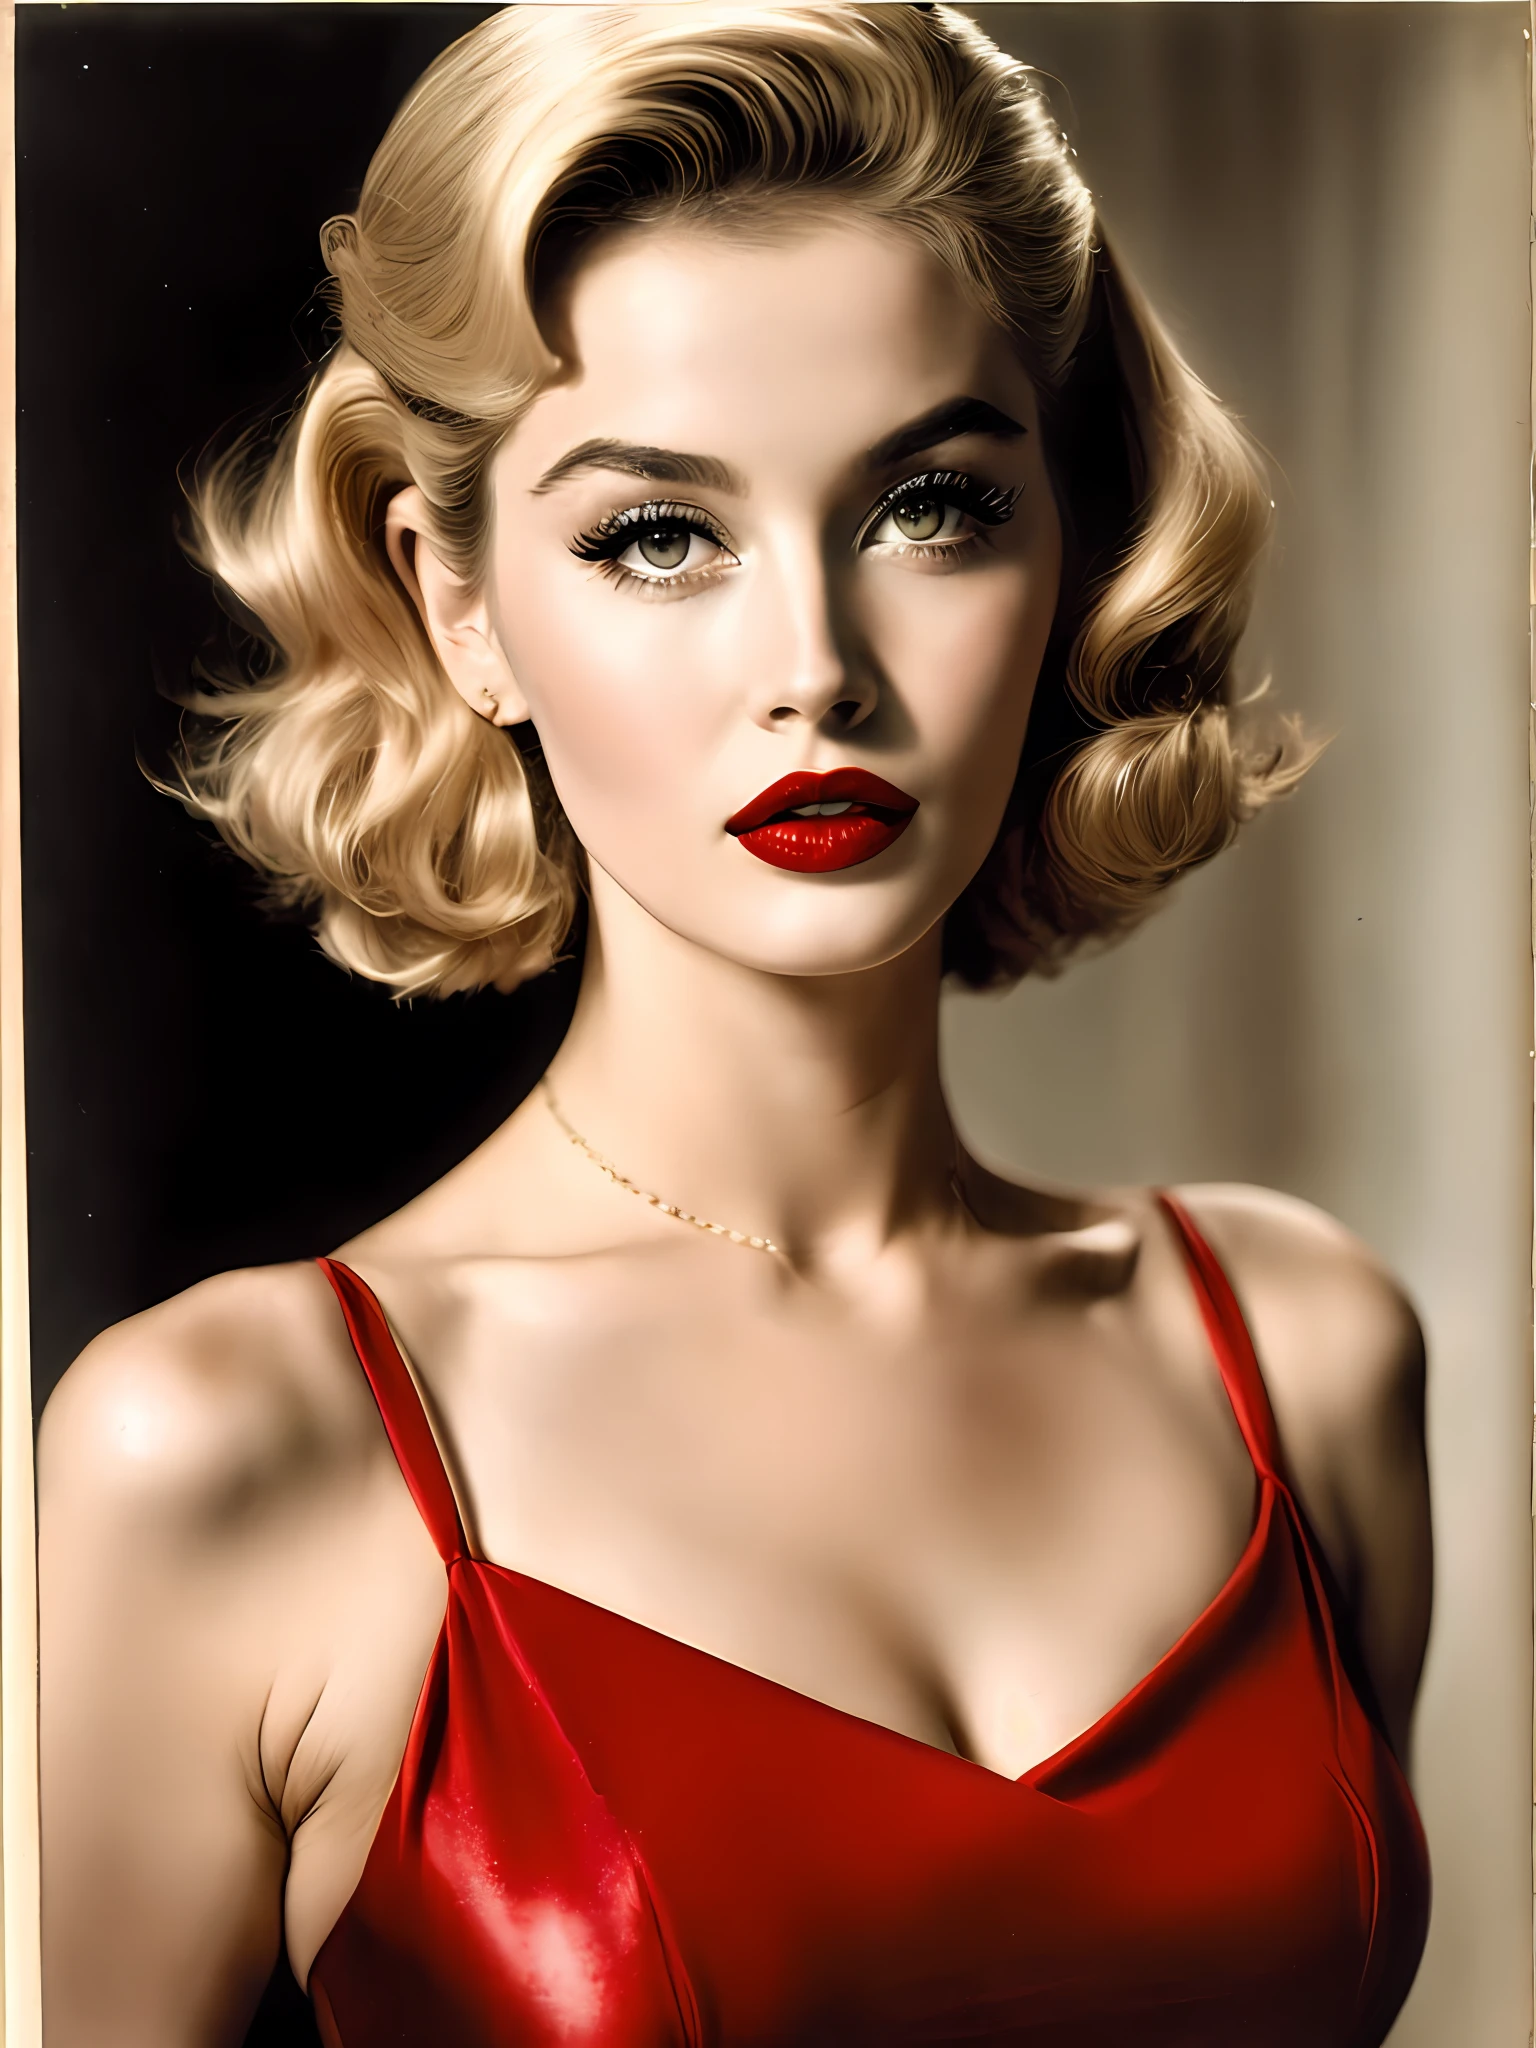 Bomba rubia de la década de 1950 con labios carnosos y ojos sensuales. Lleva un lápiz labial rojo y un vestido ajustado, rezumando confianza y sensualidad 8k